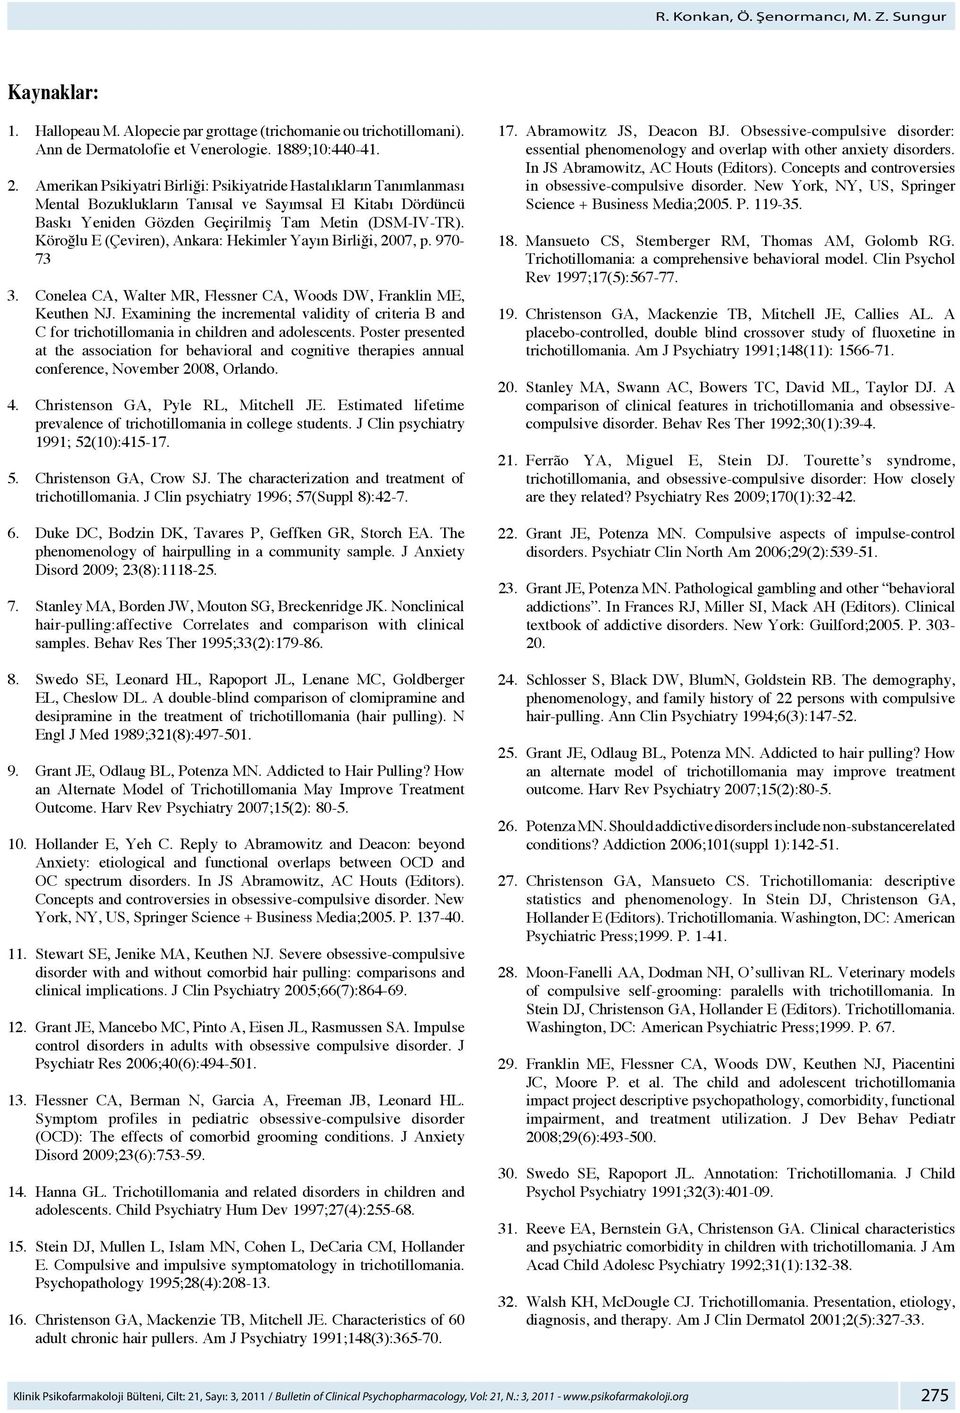 Köroğlu E (Çeviren), Ankara: Hekimler Yayın Birliği, 2007, p. 970-73 3. Conelea CA, Walter MR, Flessner CA, Woods DW, Franklin ME, Keuthen NJ.